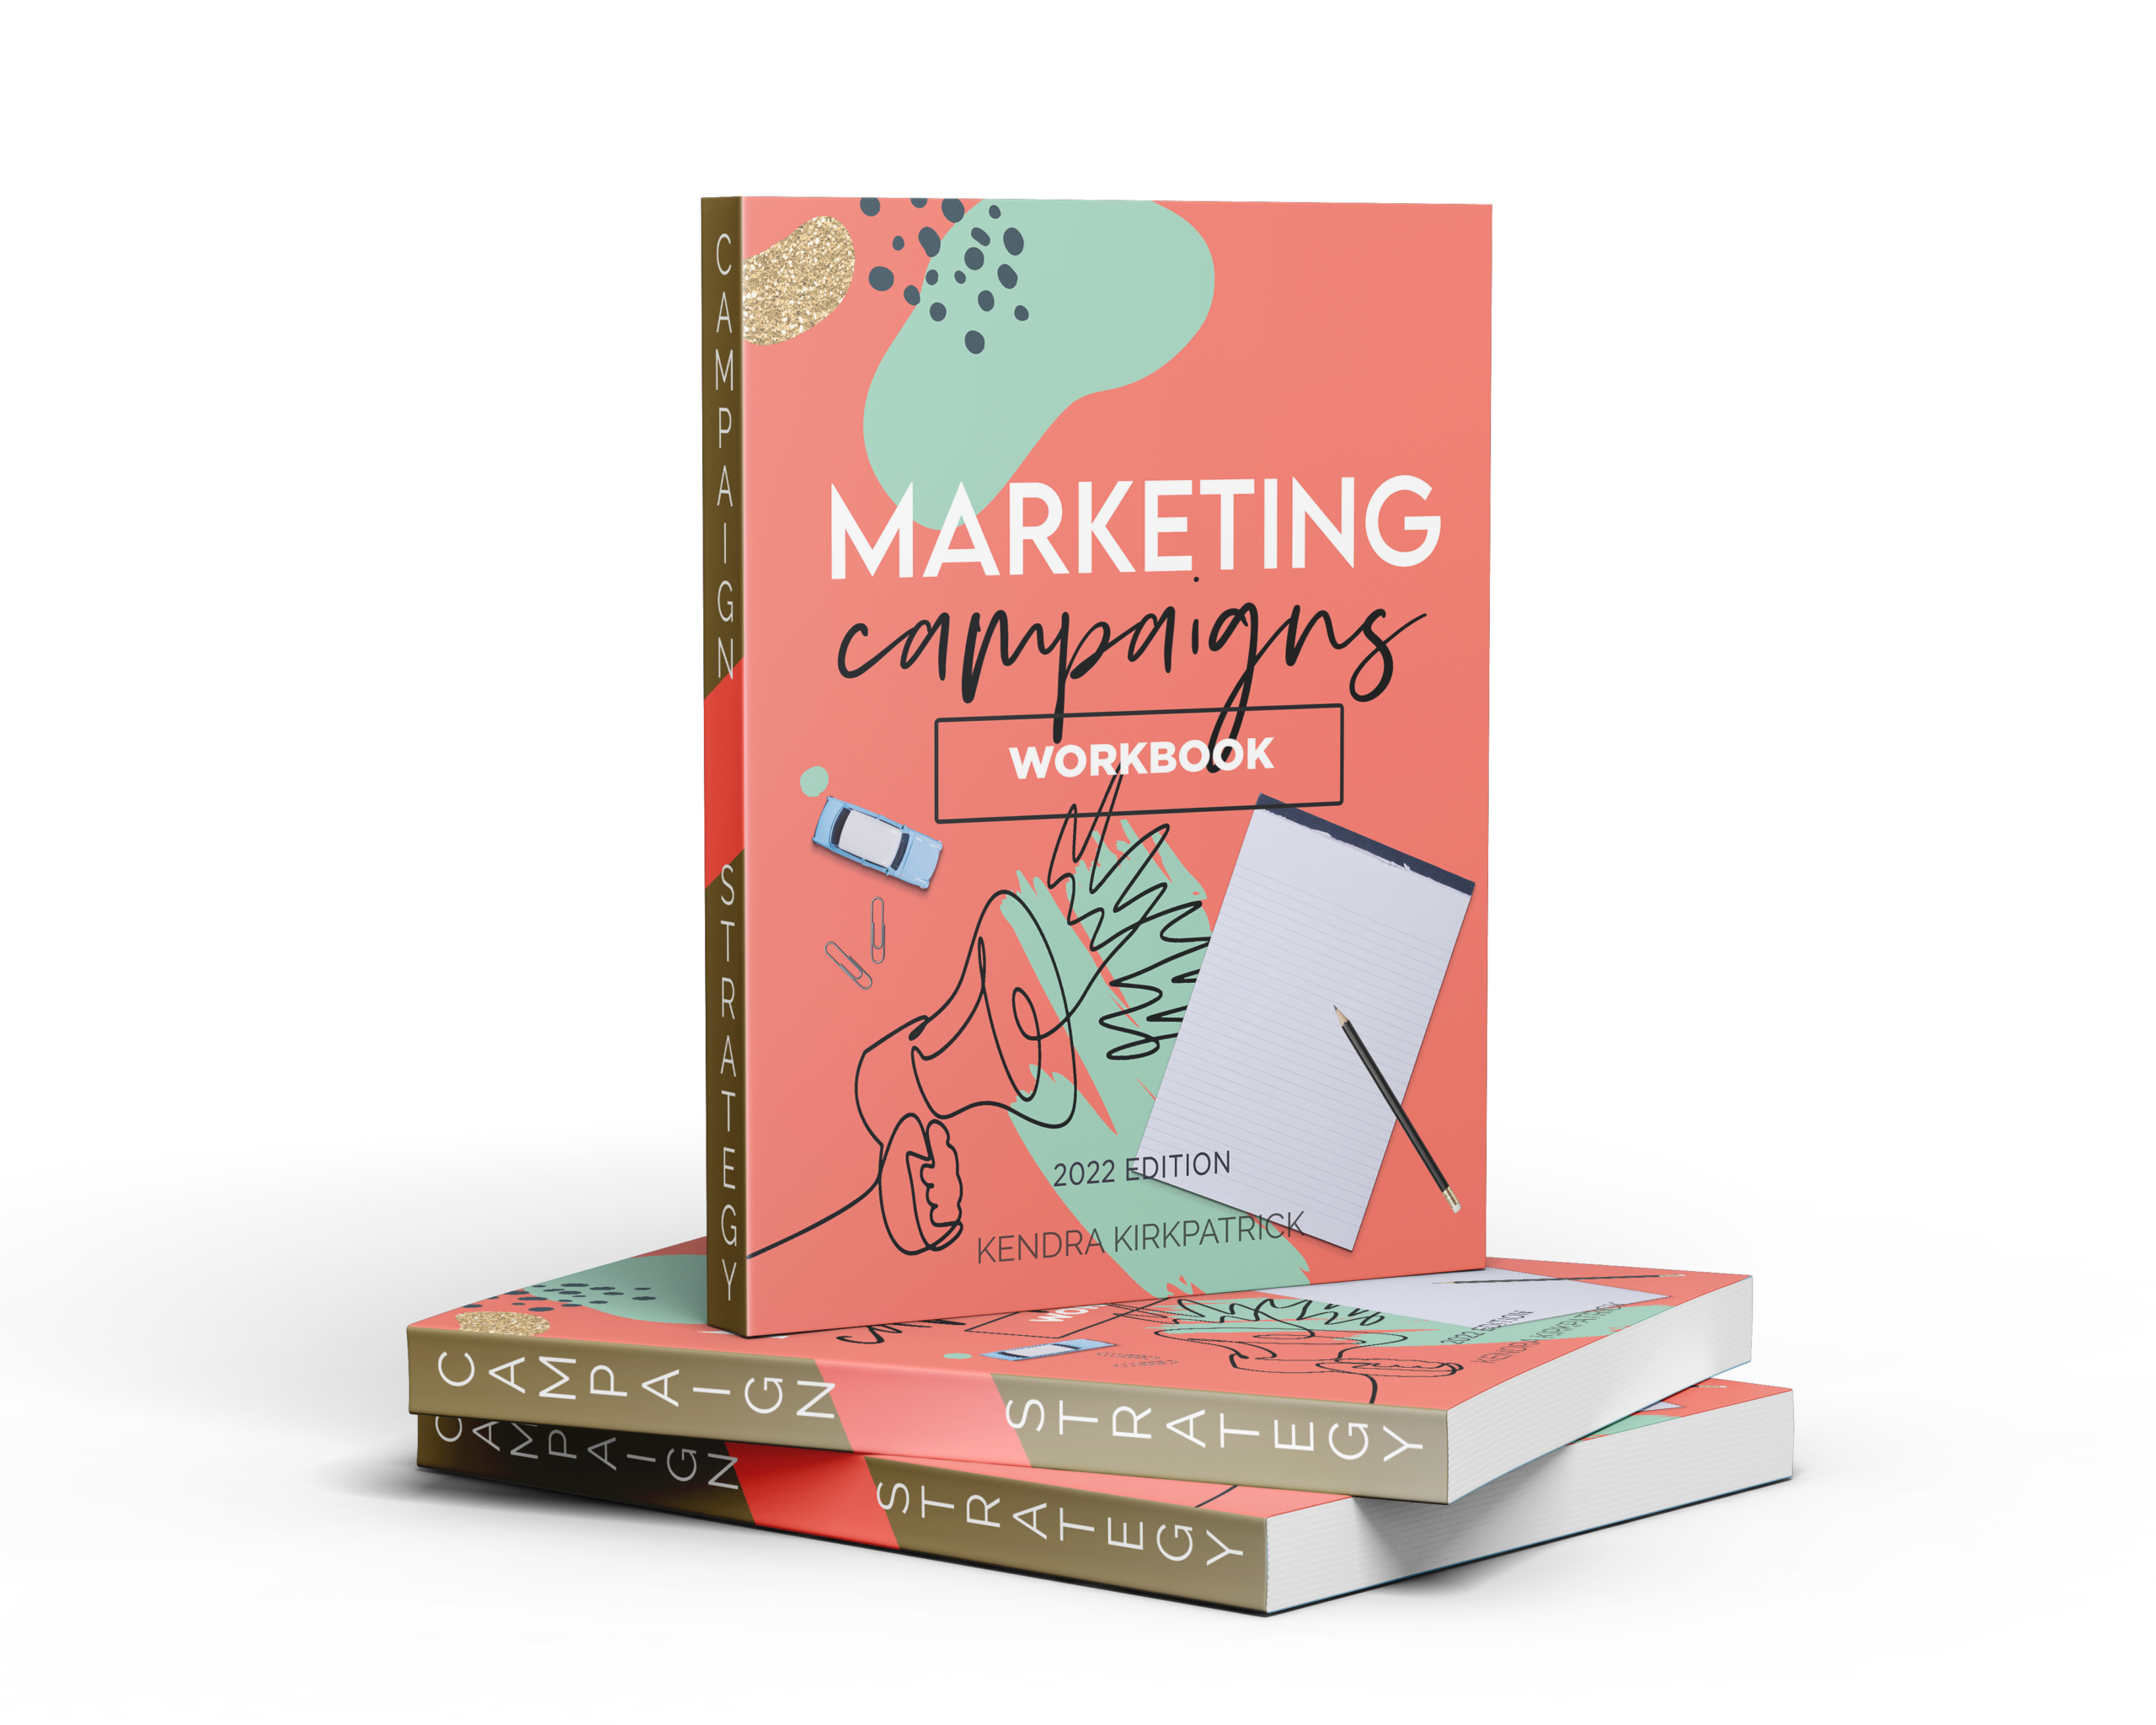 marketingworkbook-mockup